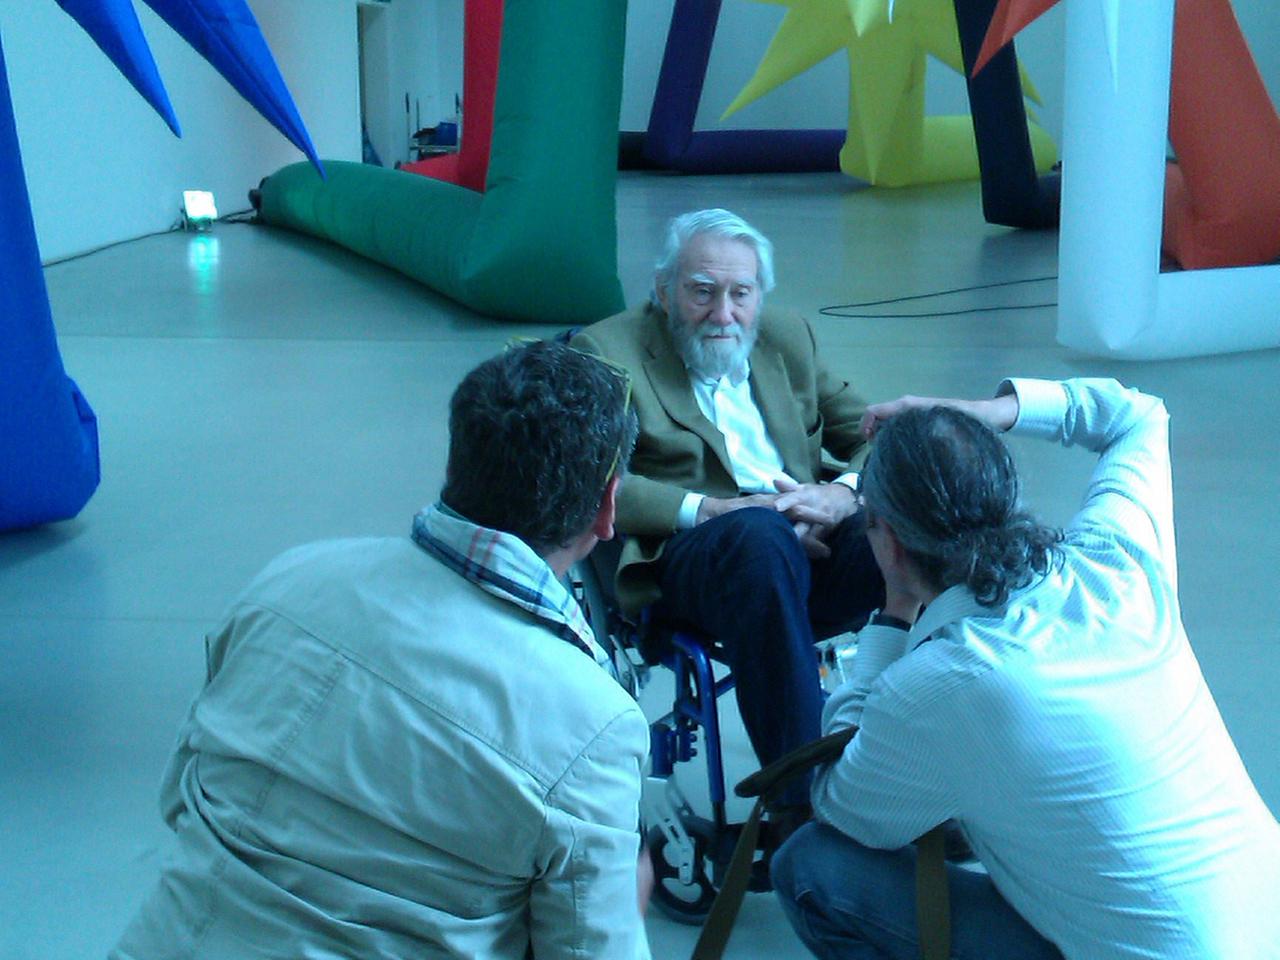 Der Künstler Otto Piene sitzt in einem Stuhl vor seinen Inflatables und wird von zwei Leuten fotografiert.